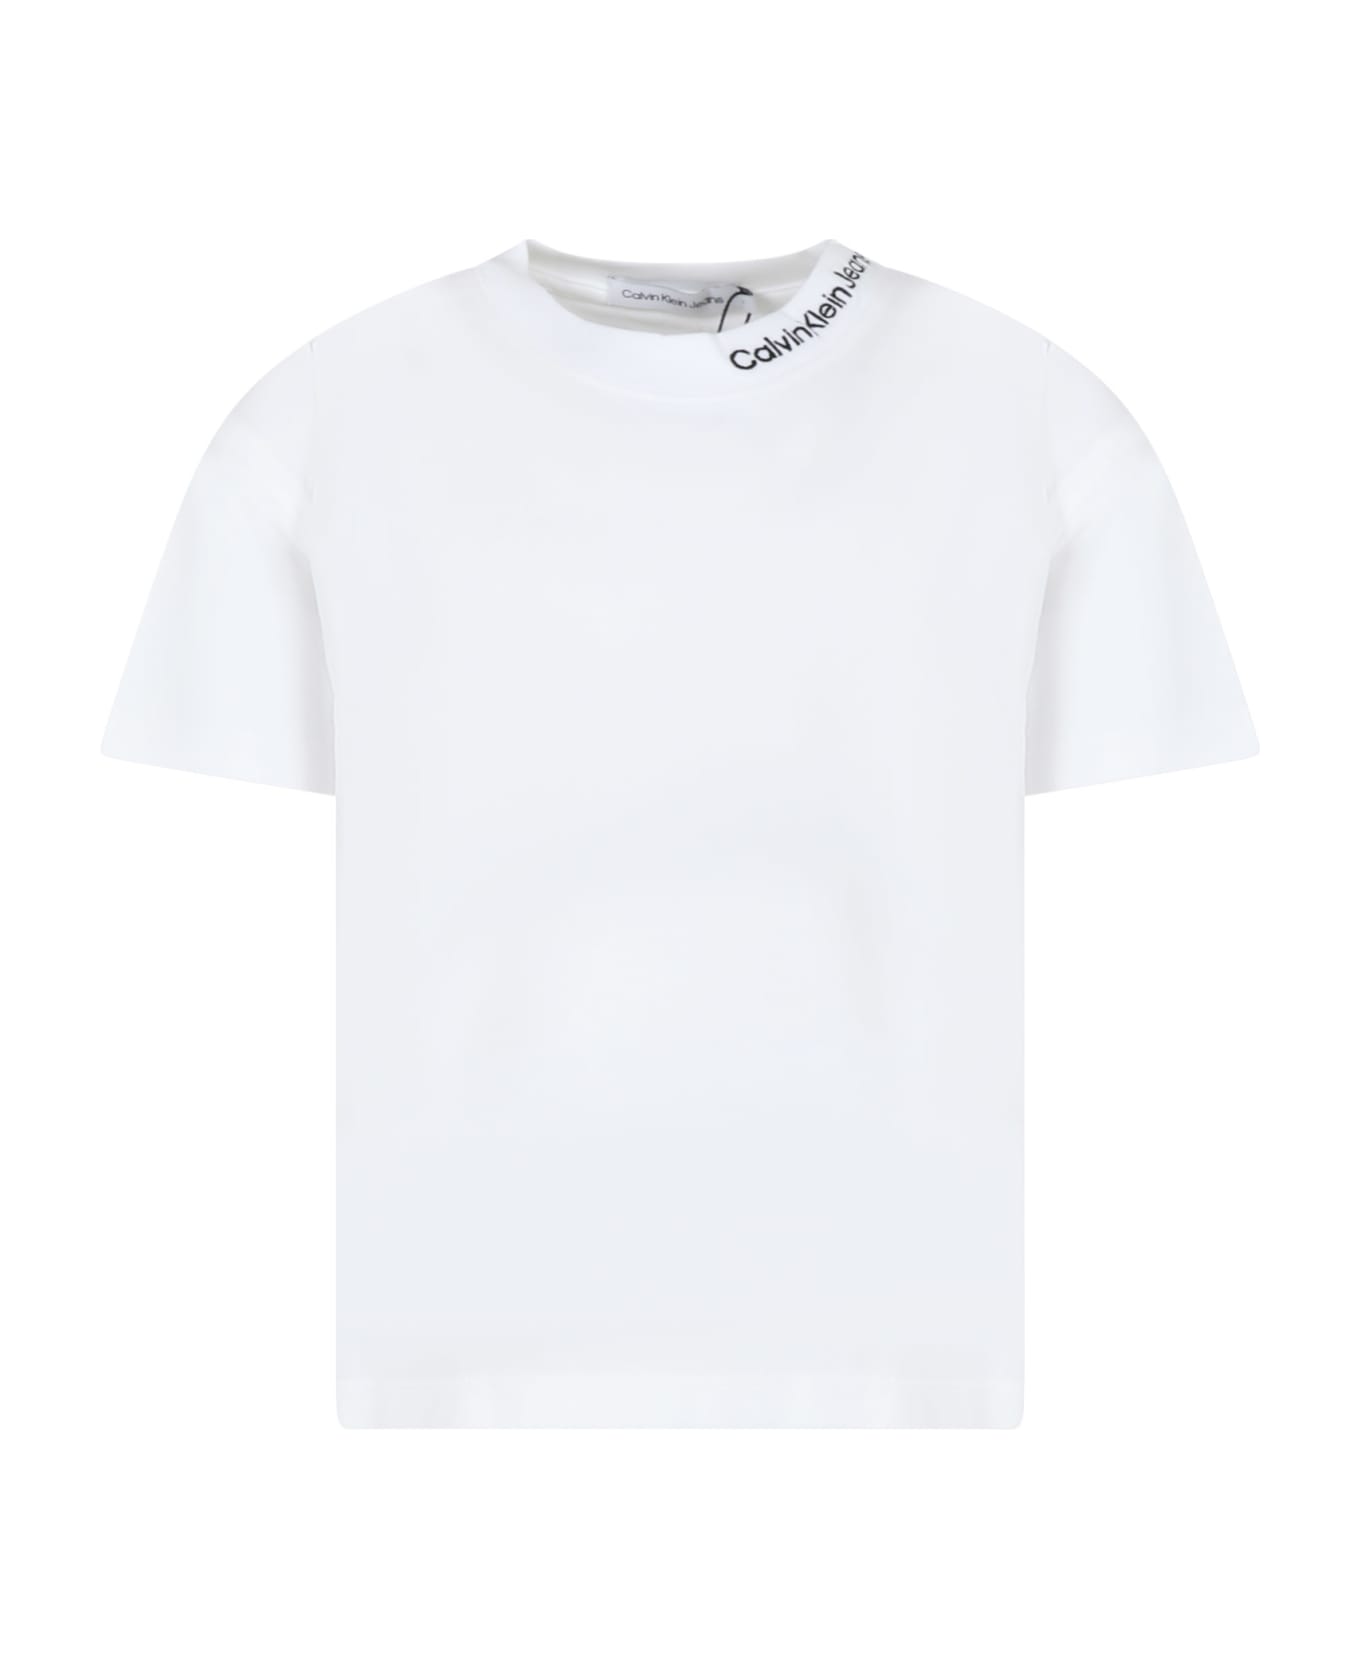 Calvin Klein White T-shirt For Boy With Logo - White